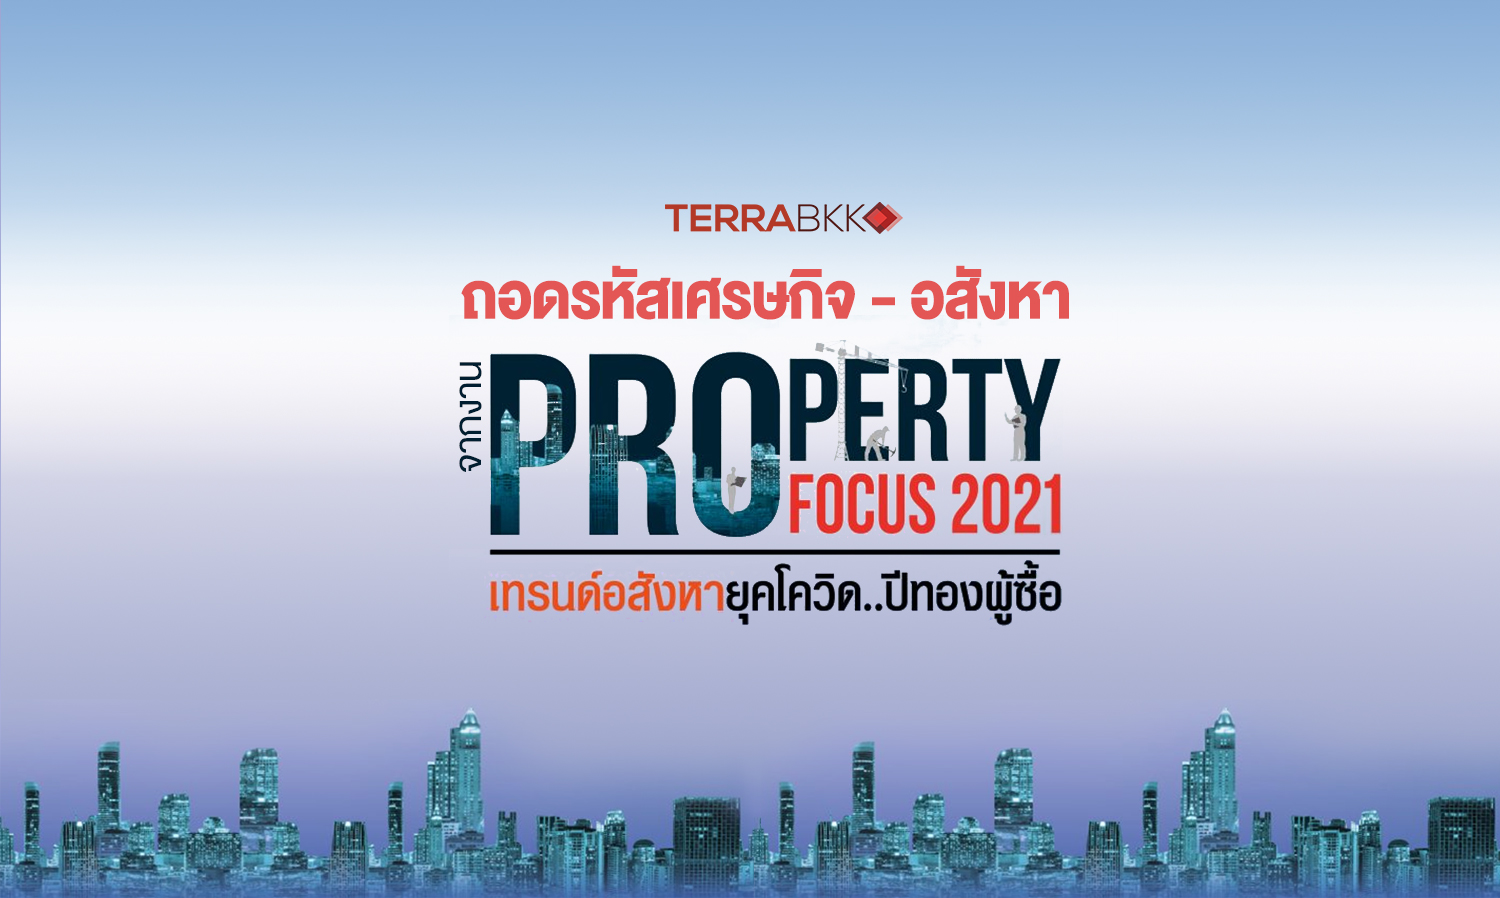 ถอดรหัสทิศทางเศรษฐกิจ – อสังหาฯ จากงาน “Property Focus 2021”